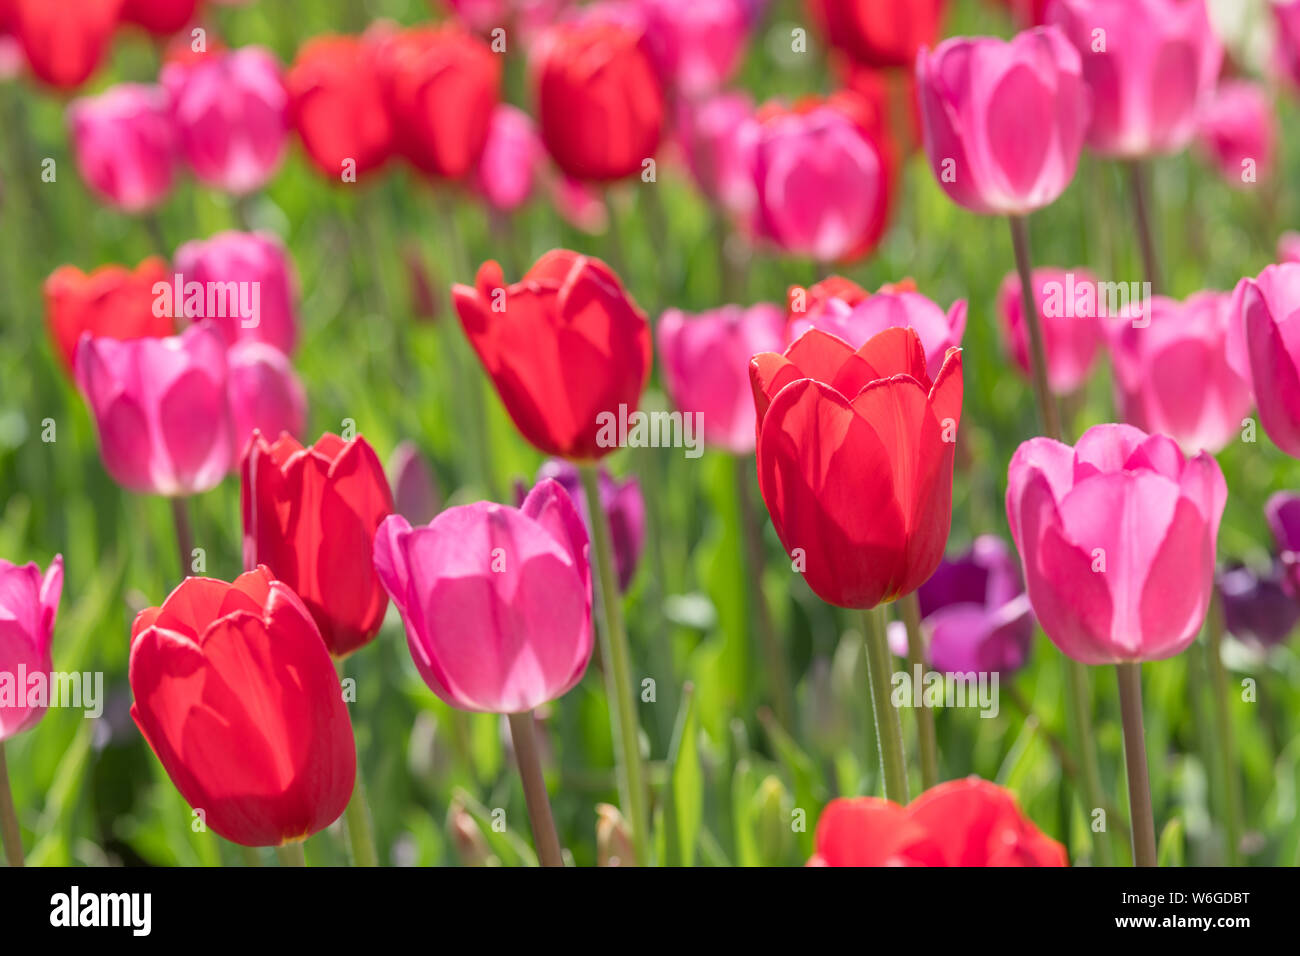 Rote Tulpen - eine Nahaufnahme und beleuchteten Blick auf hellen roten und rosa Tulpe Blumen blühen im Frühling Sonne. Denver Botanic Gardens, Colorado, USA. Stockfoto